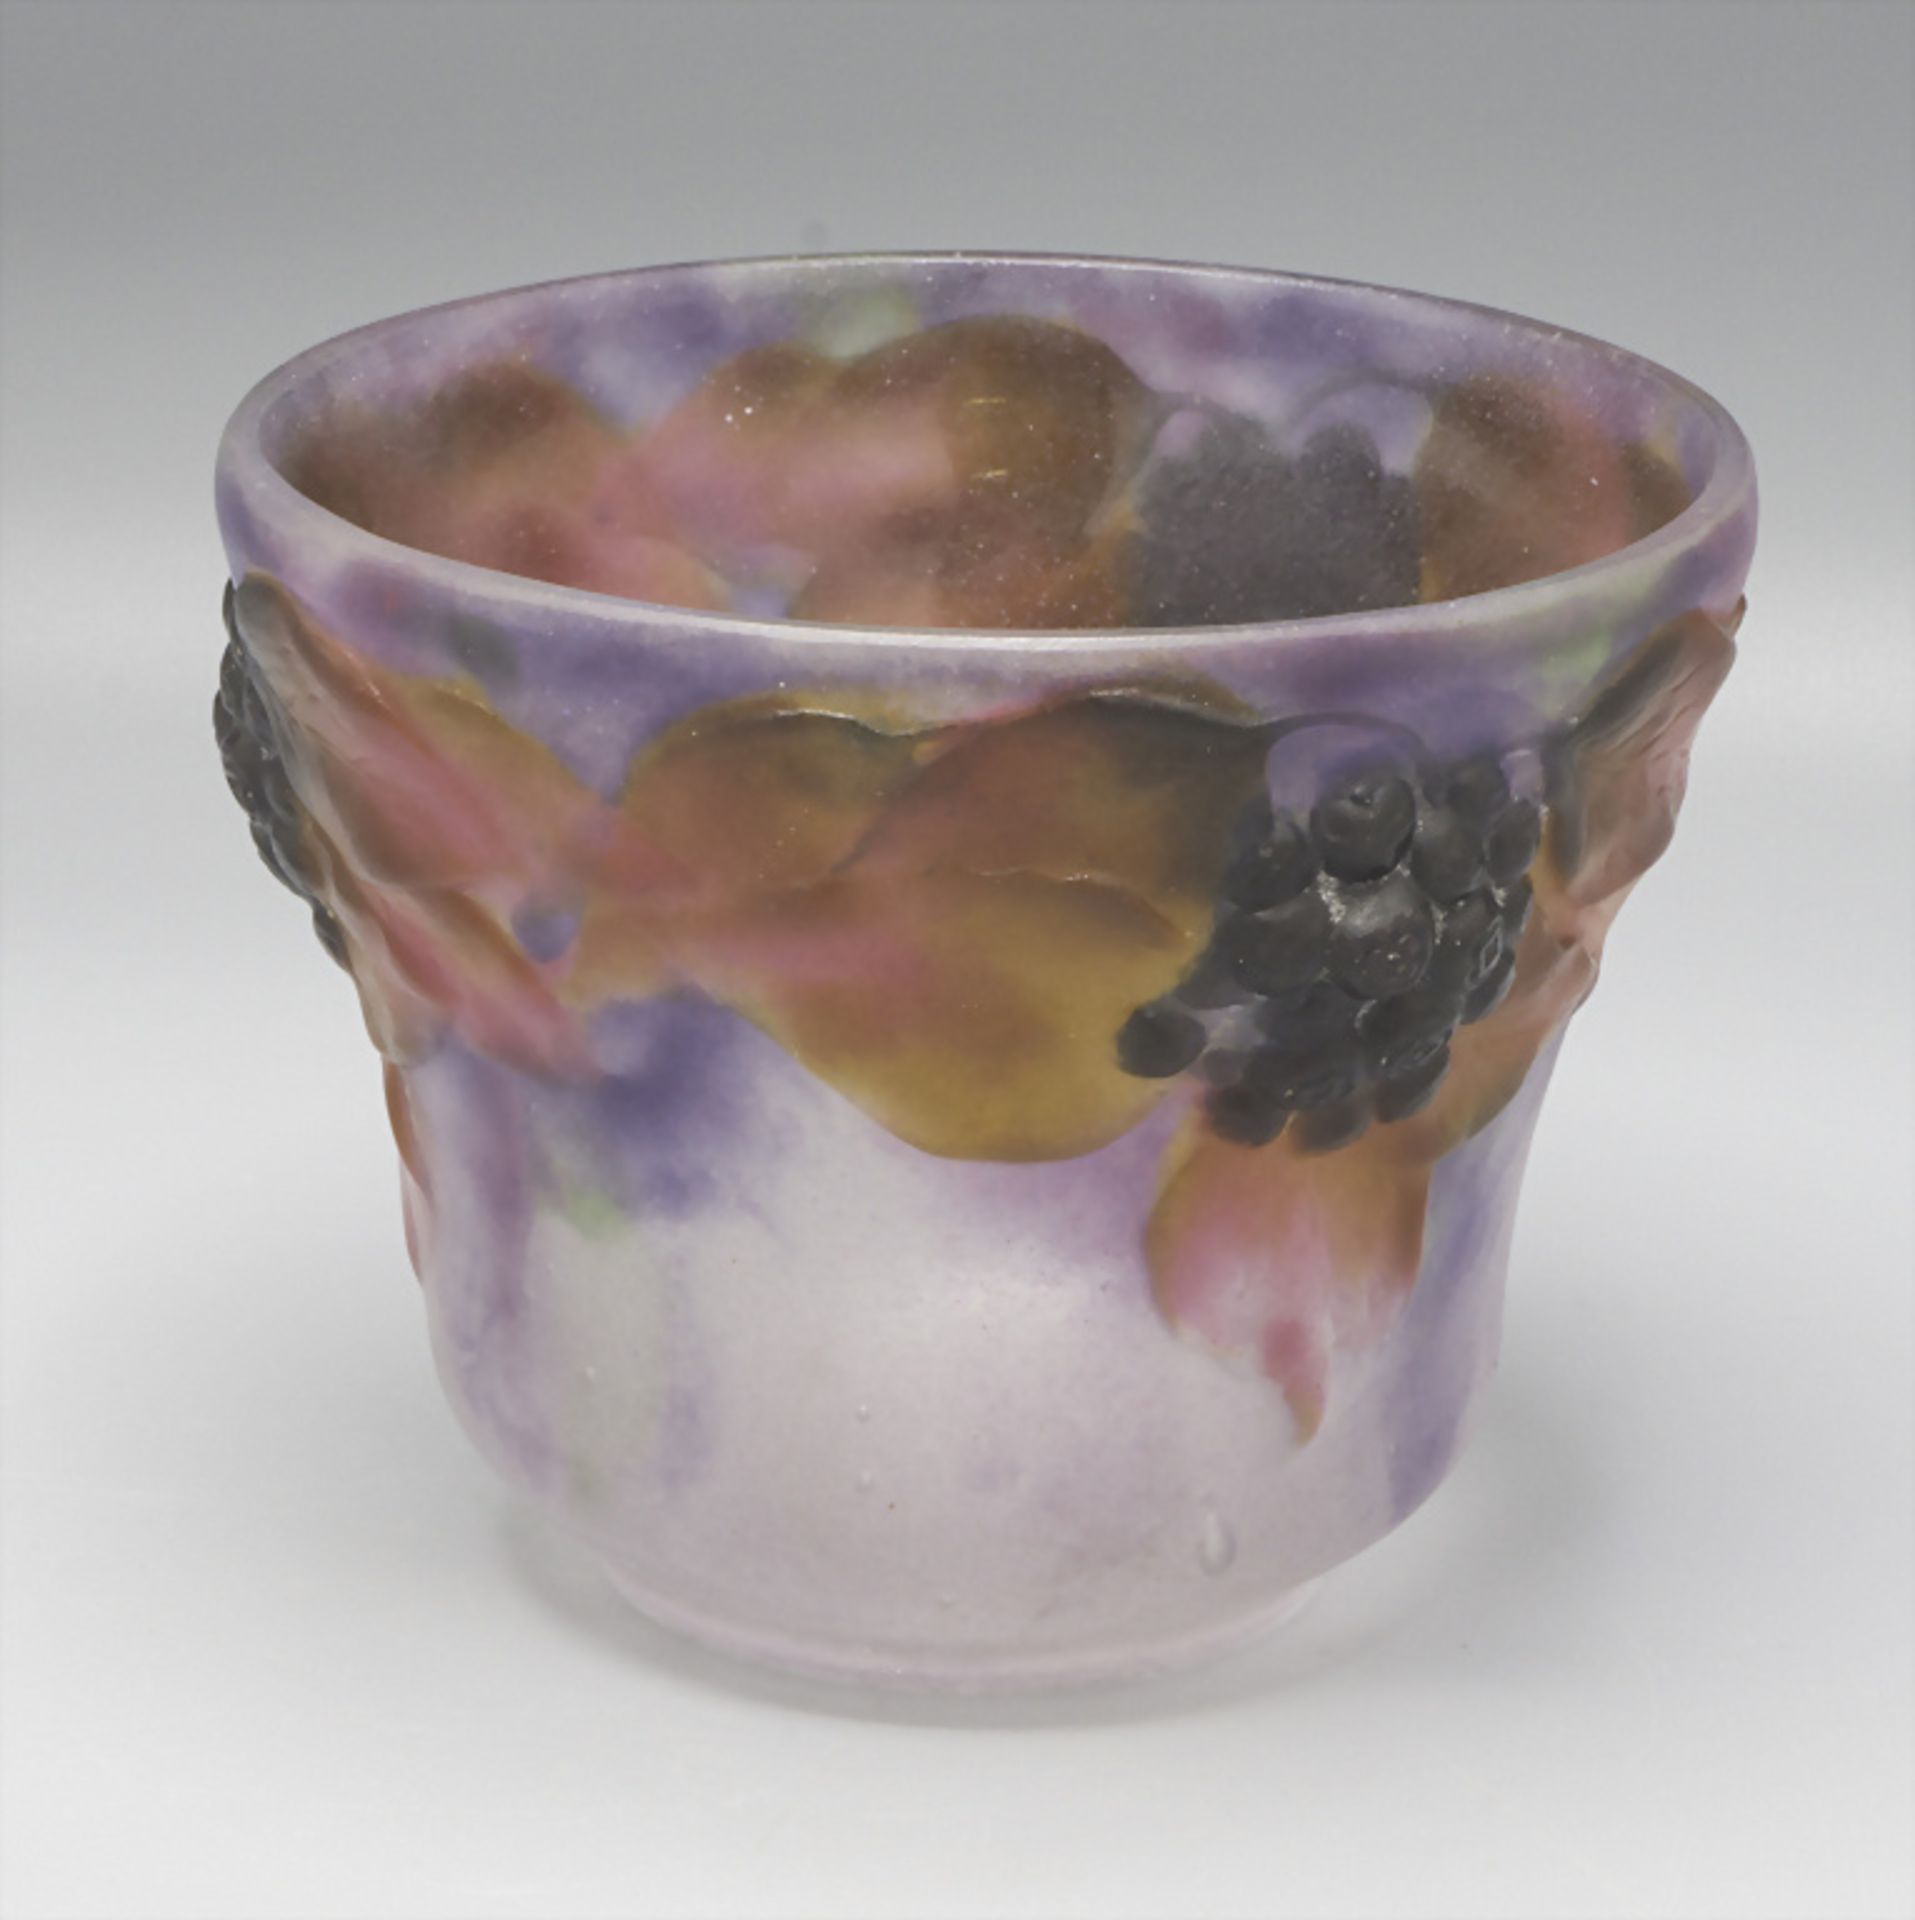 Jugendstil Schale 'Lierre' / Art Déco glass bowl 'Ivy', Gabriel Argy-Rousseau, Paris, 1919 - Image 2 of 6